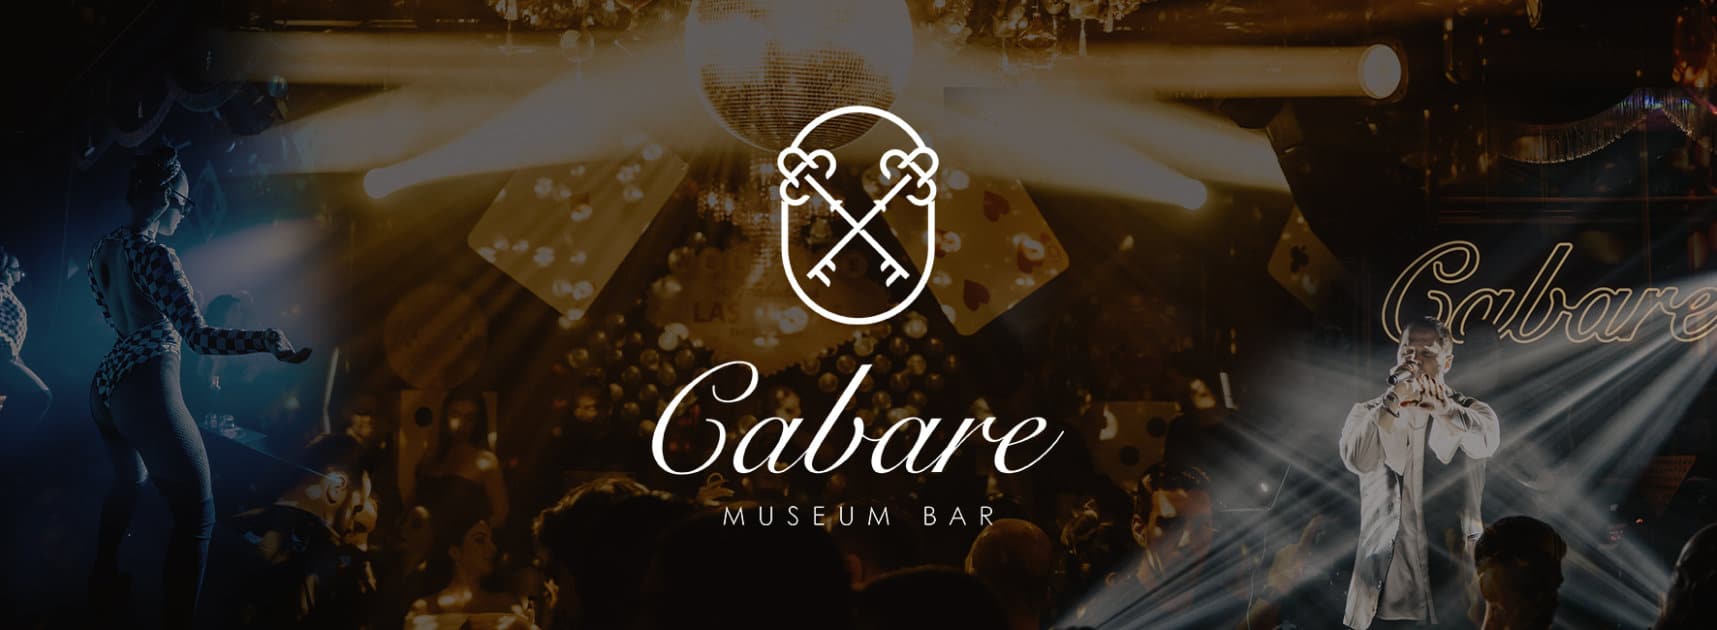 Cabare thessaloniki bar club